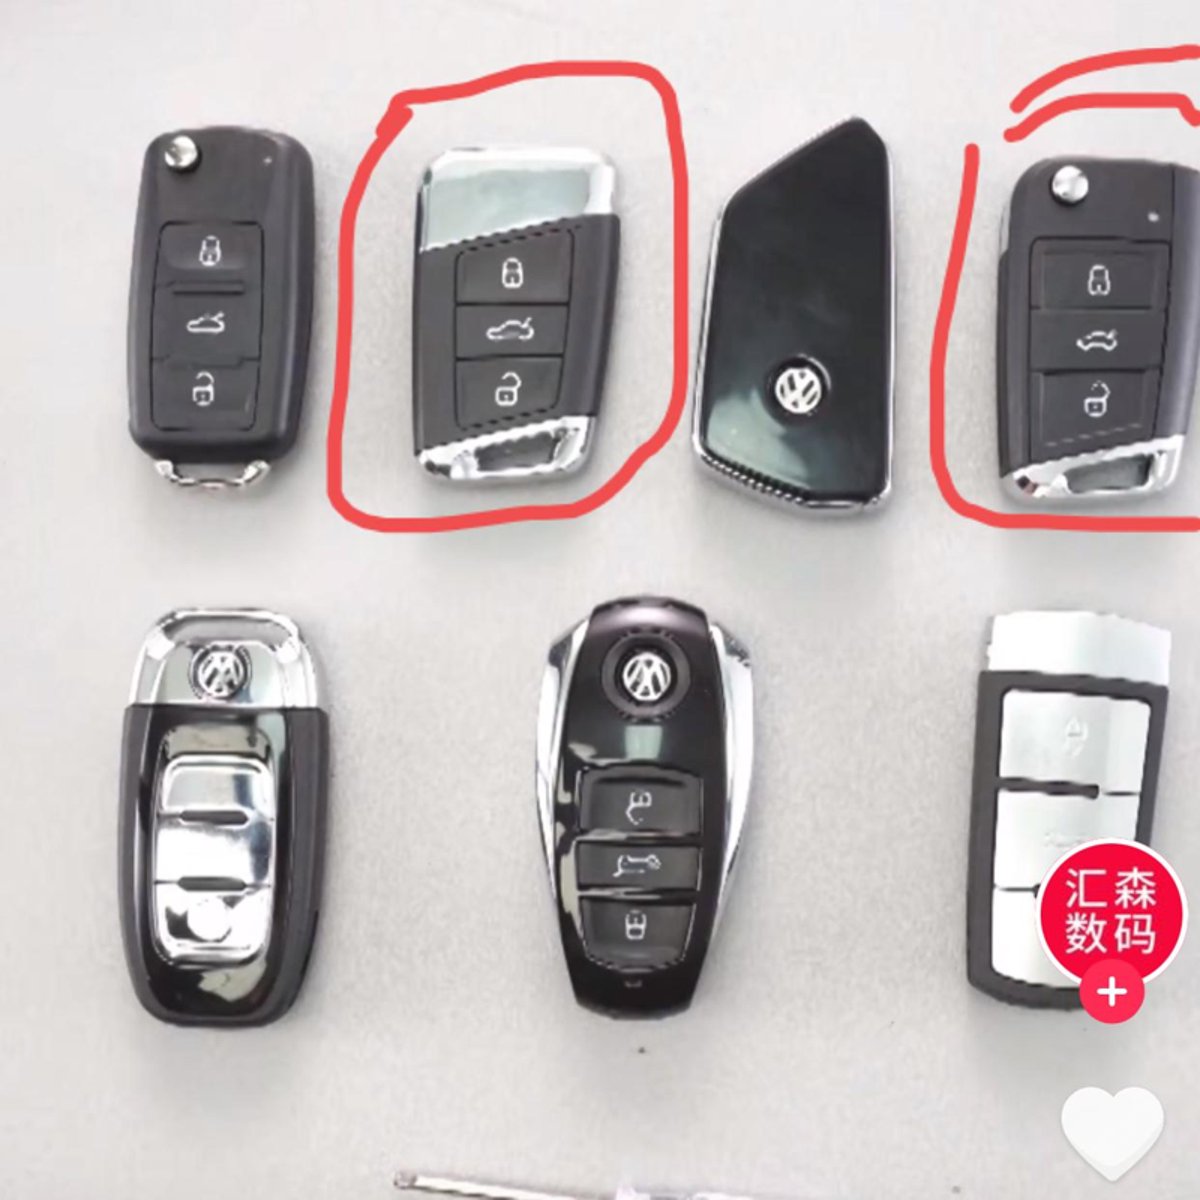 大众帕萨特 的车钥匙跟备用钥匙都是最新的车钥匙吗？为什么一个新的一个老的带弹机械钥匙的这种